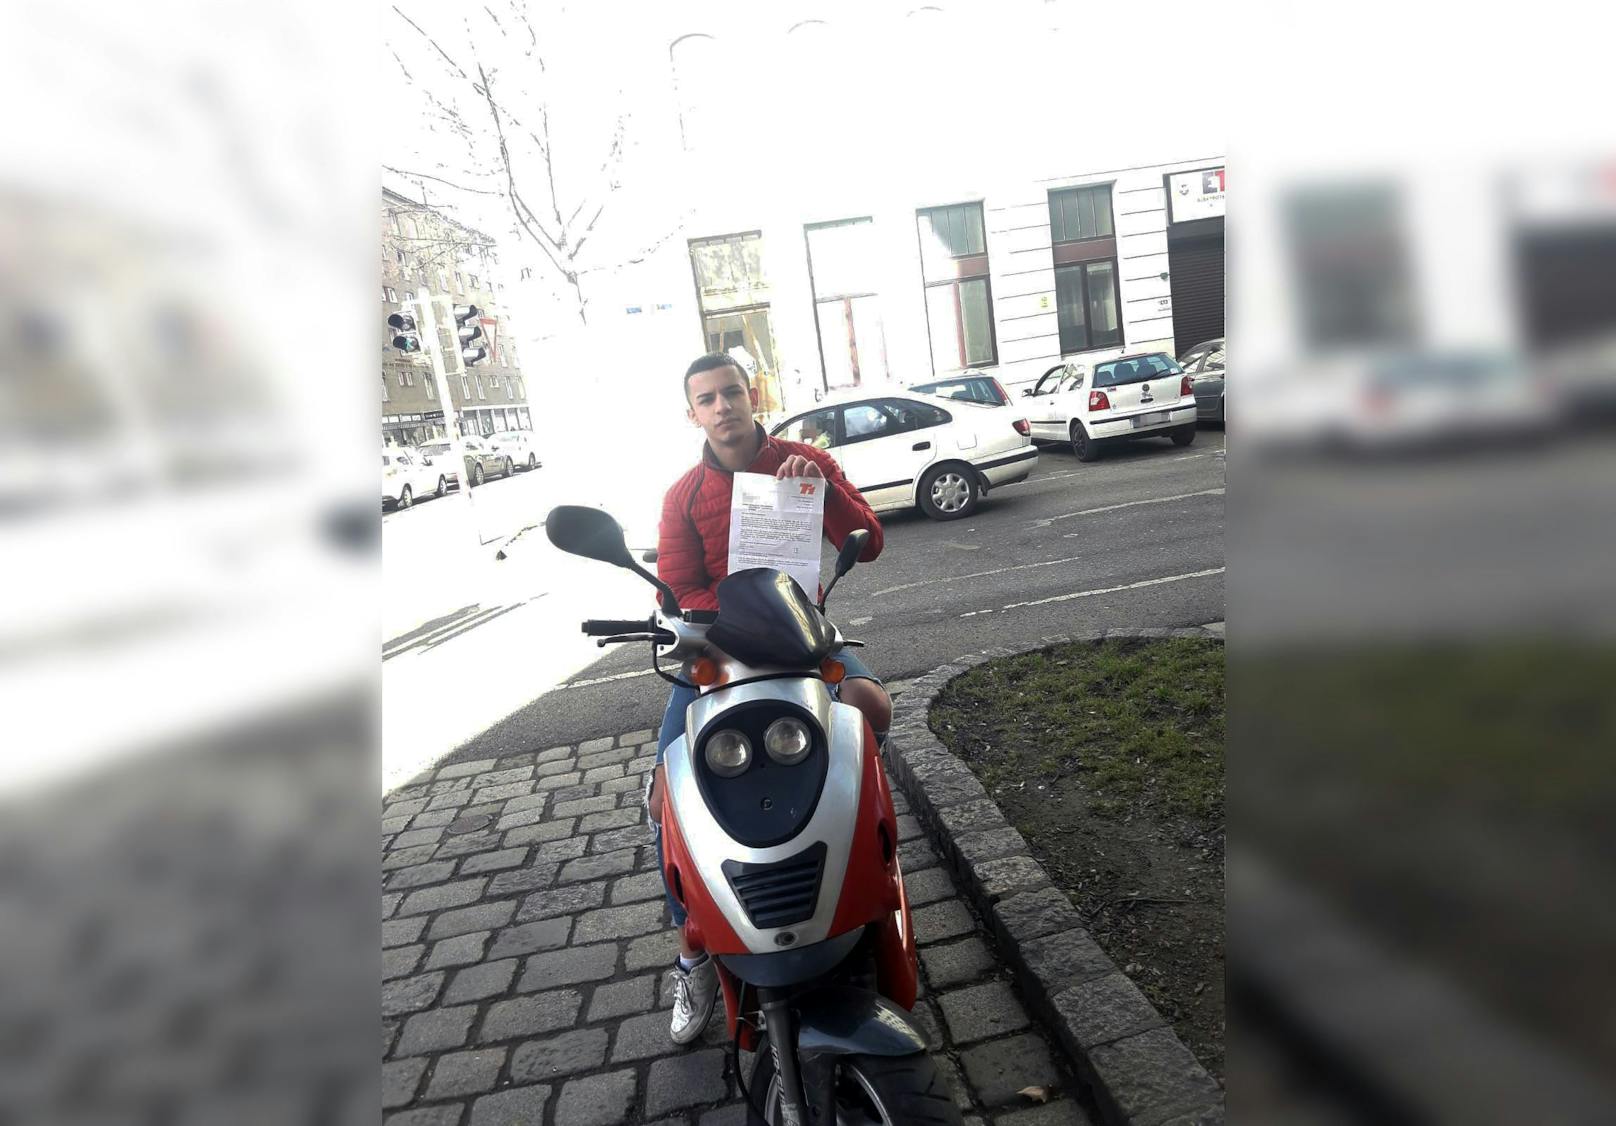 Wiener Tankstelle straft Teenie, weil er Moped putzte